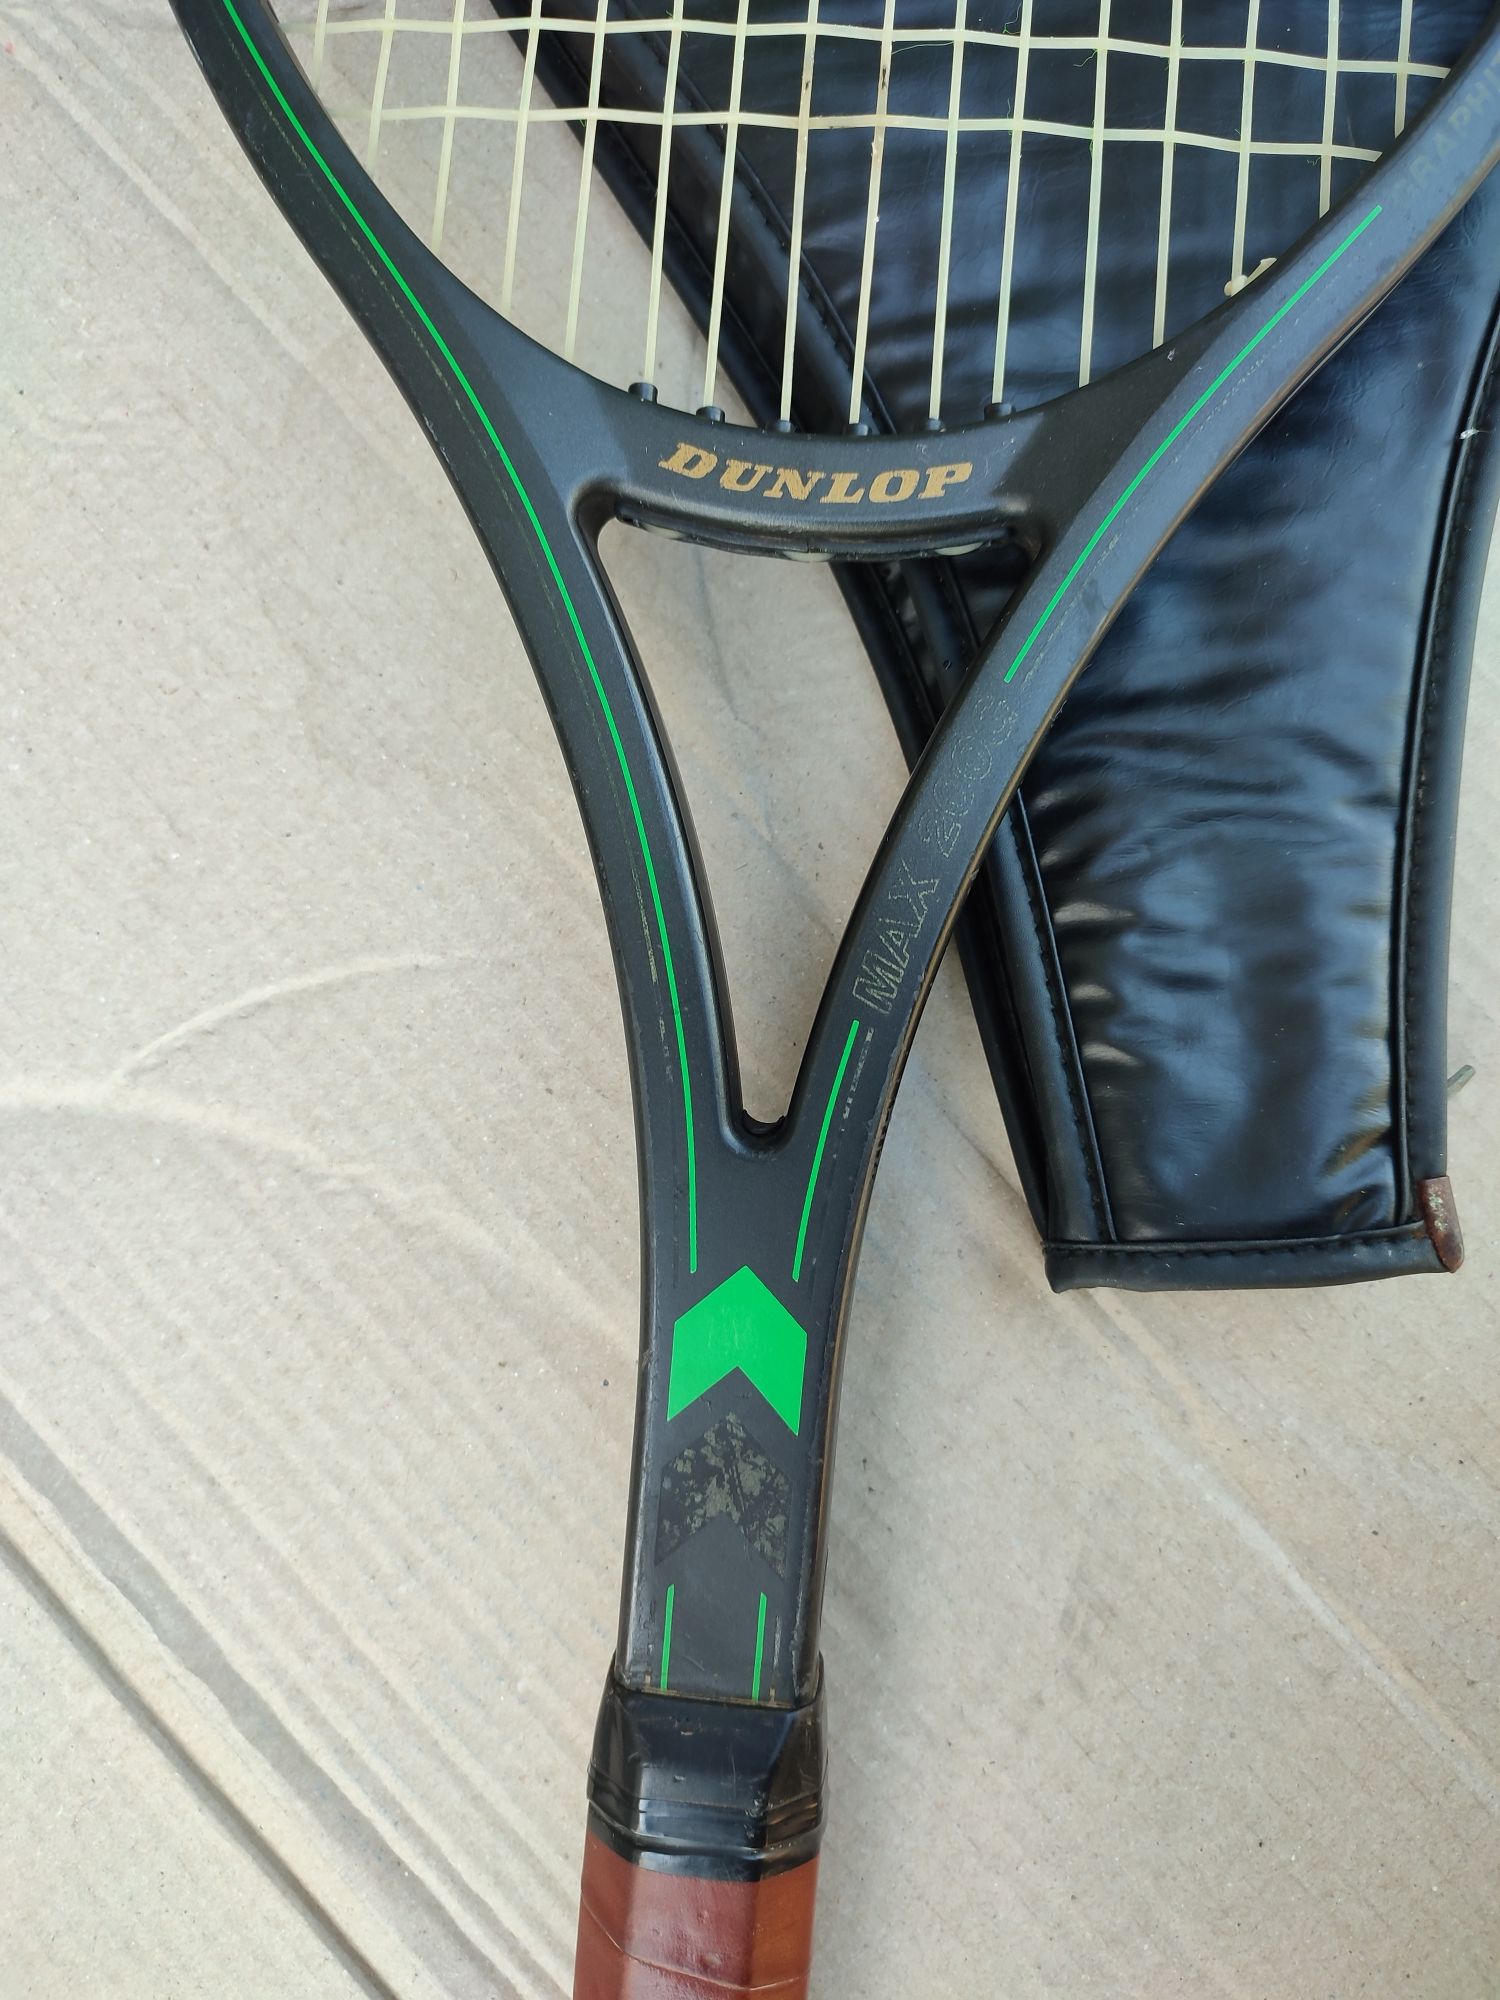 Dunlop max 200g-Racheta tenis